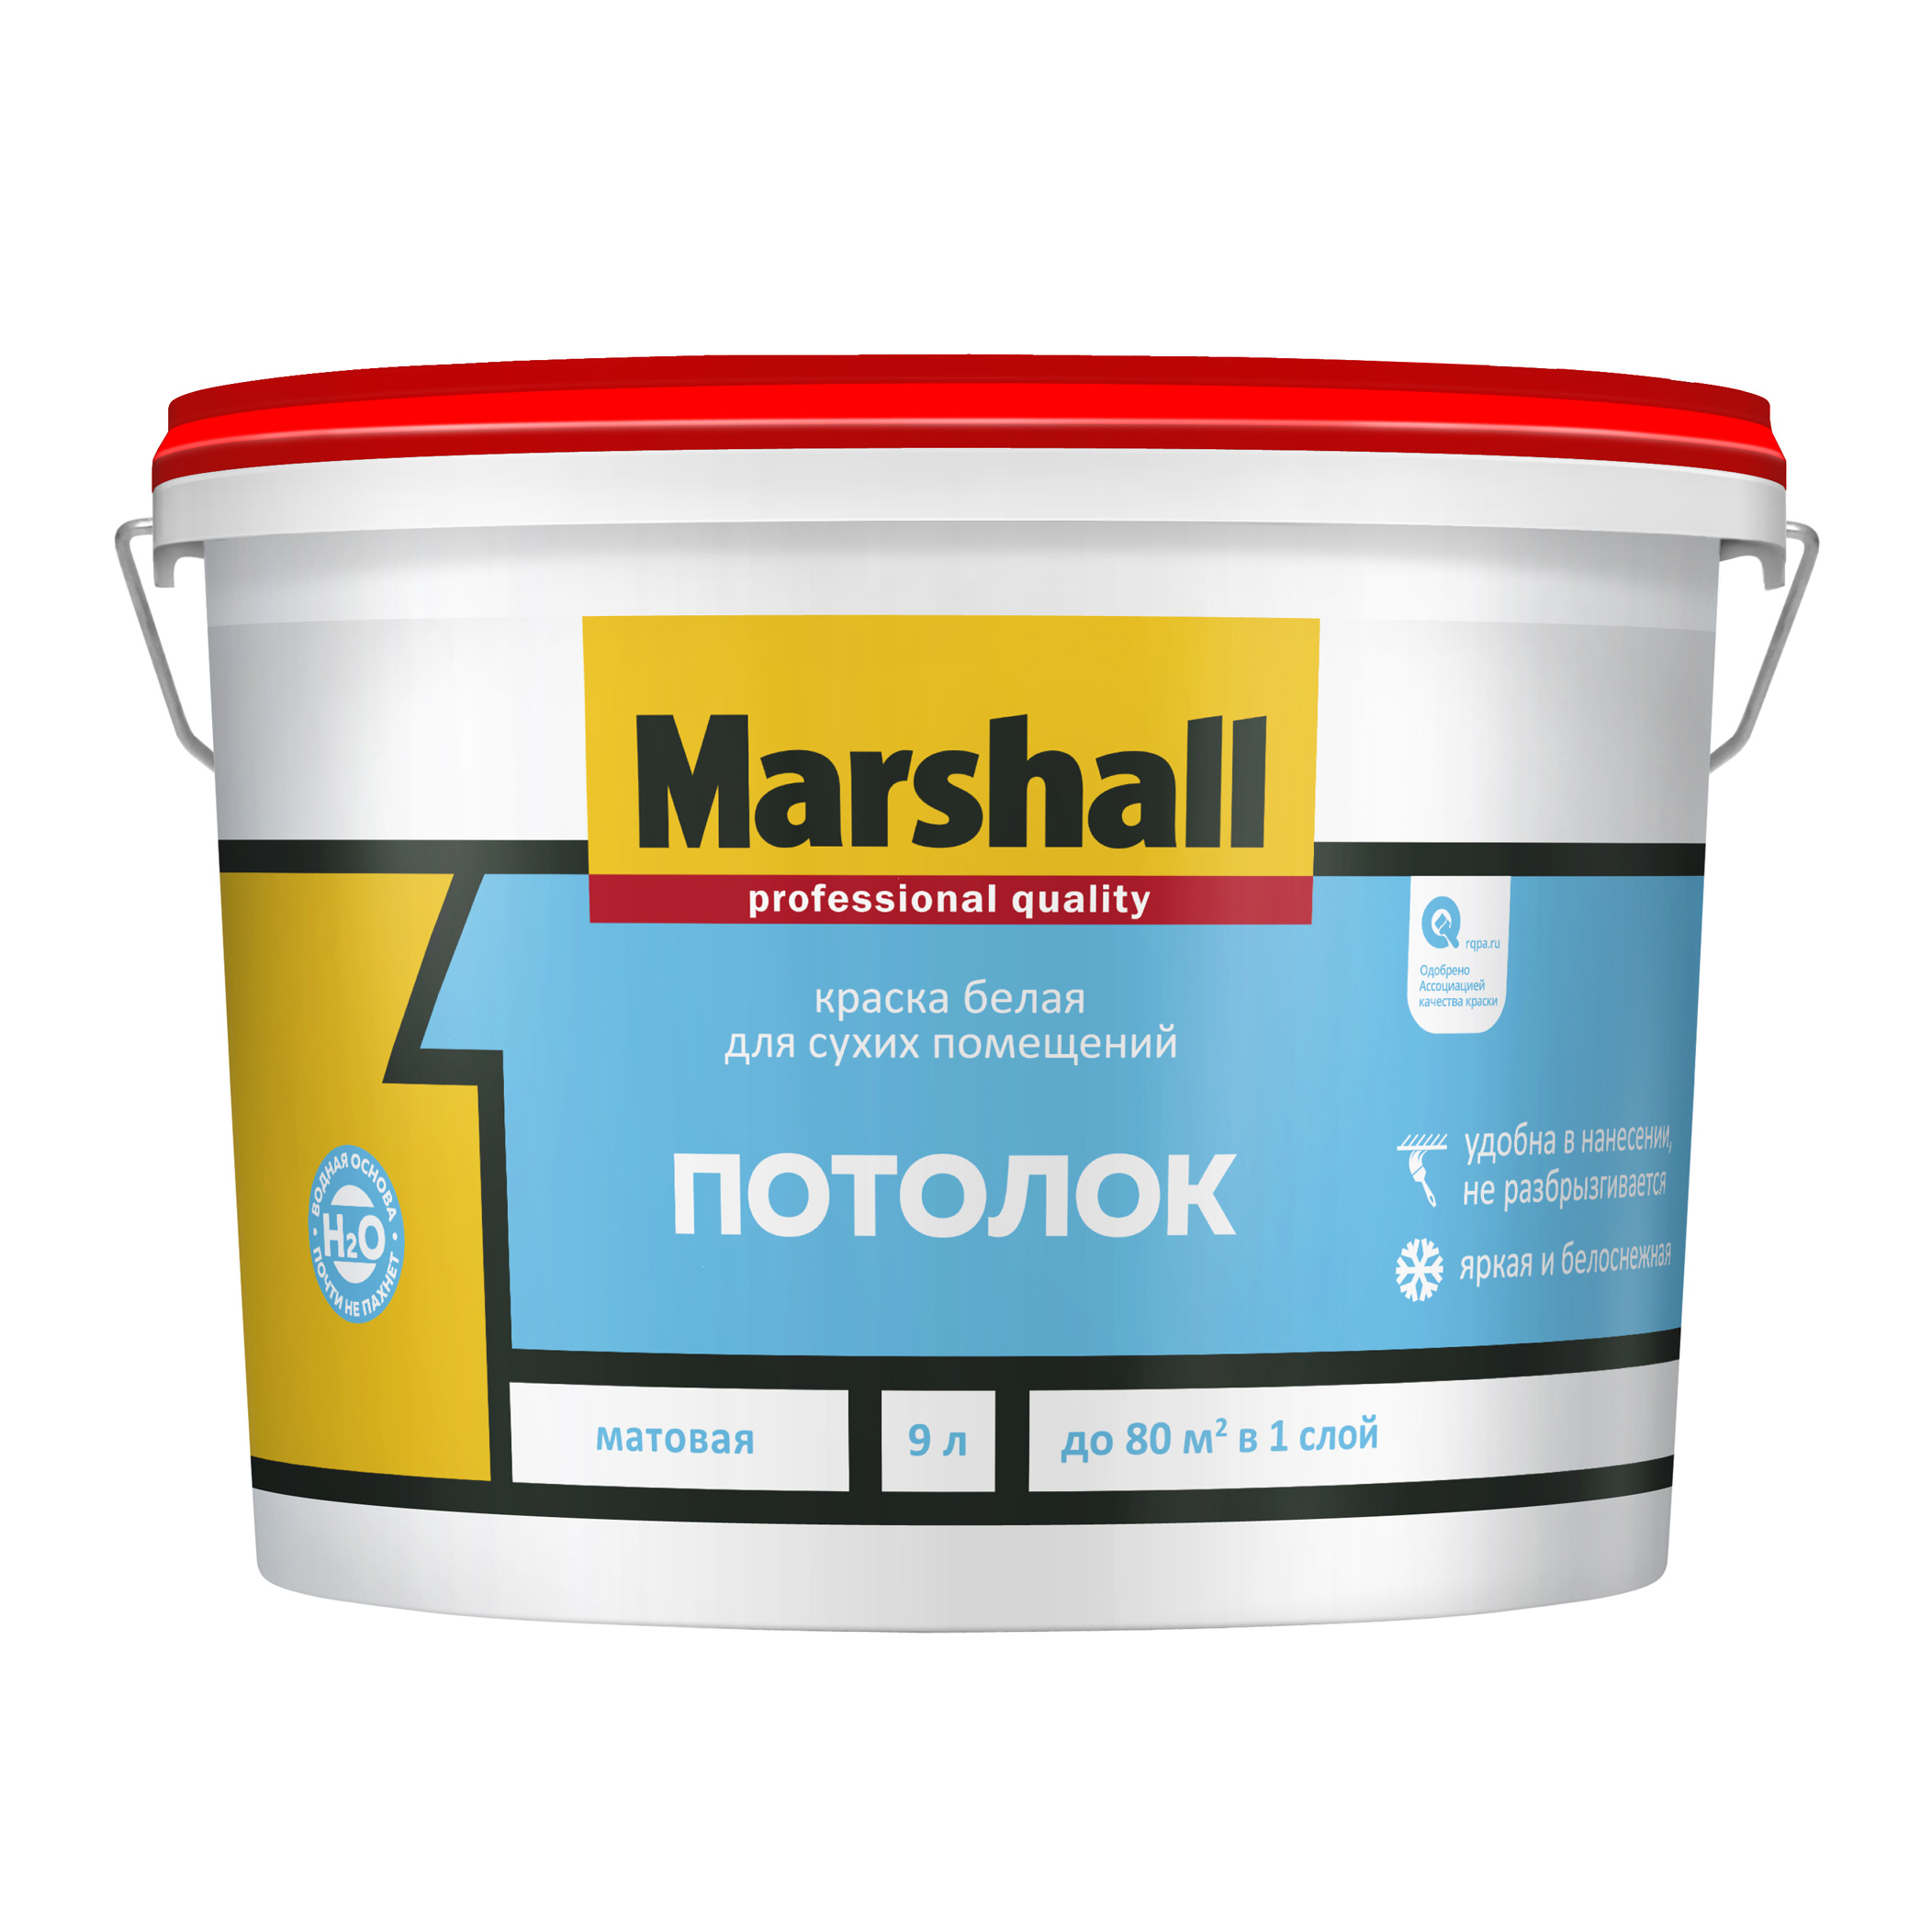 Краска для потолка сколько нужно. Краска Маршал 9л. Marshall потолок водно-дисперсионная акриловая краска для потолков 2,5л. Водомисионка краска Маршал 9л. Маршал Export-2 белая глубокоматовая краска для стен и потолков 9 л.